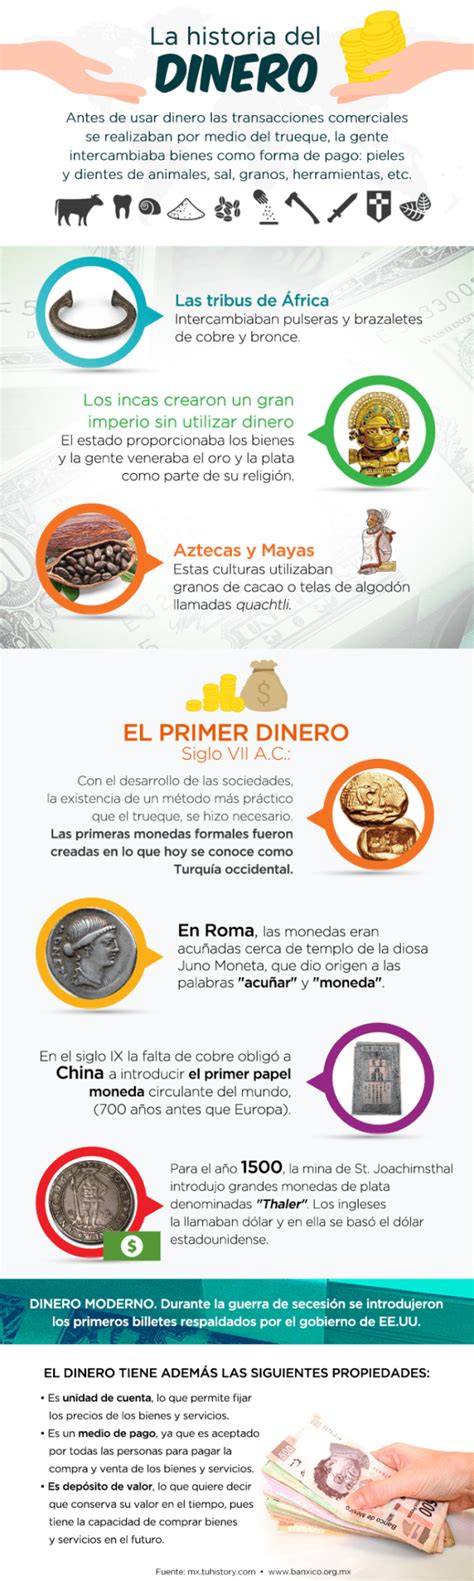 Historia Del Dinero Infografia Infographic Tics Y Formación